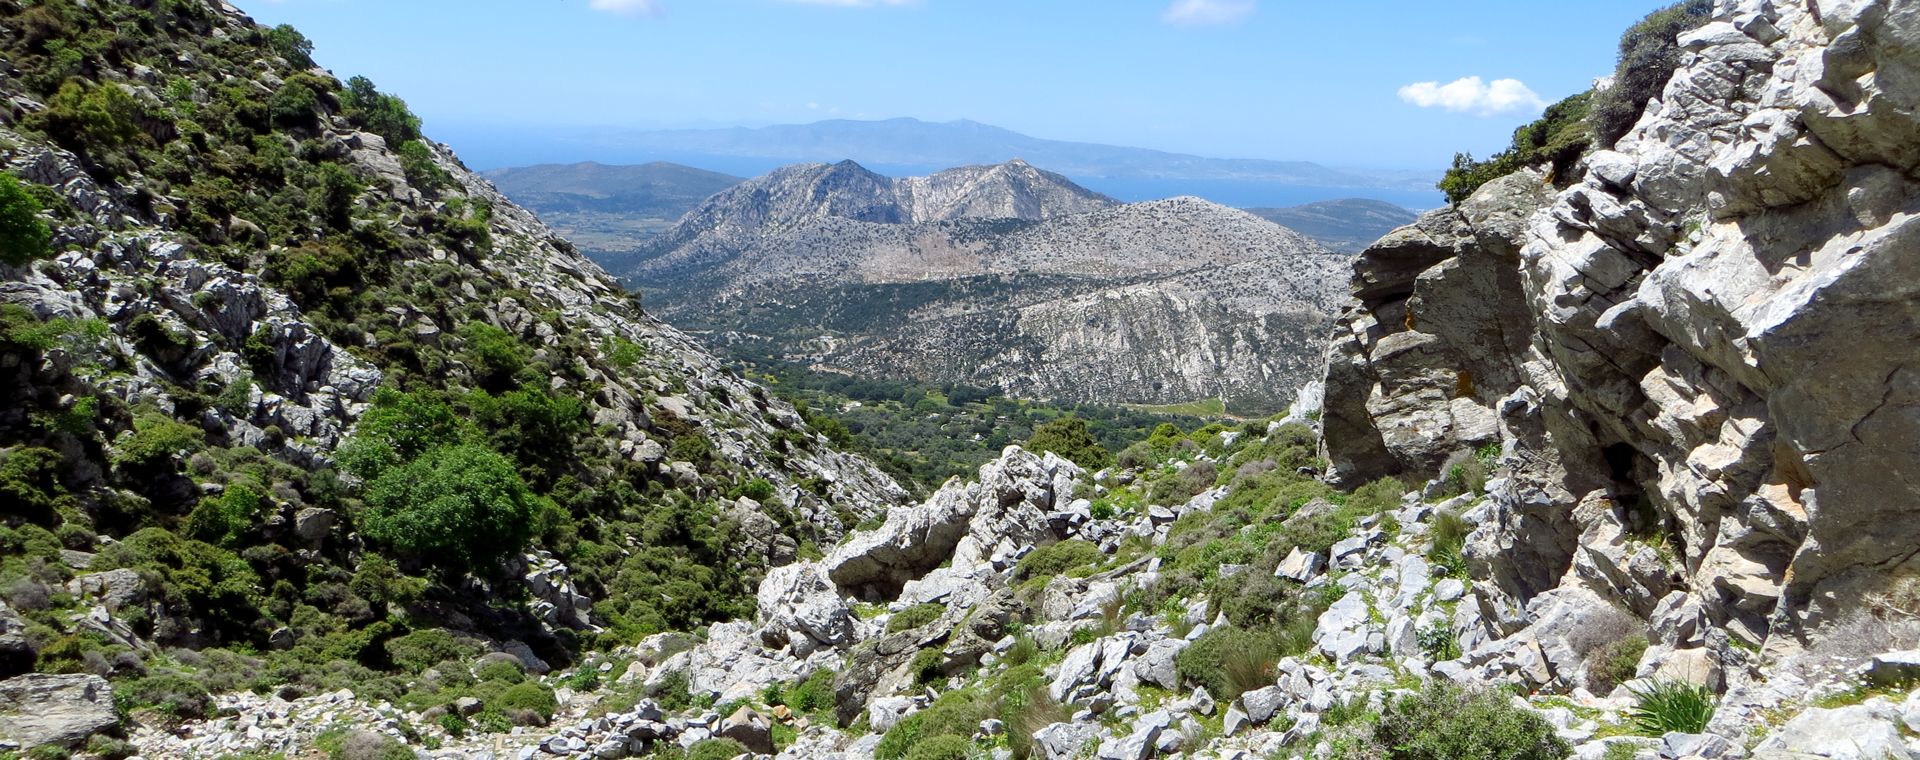 Paysage des montagnes de Naxos